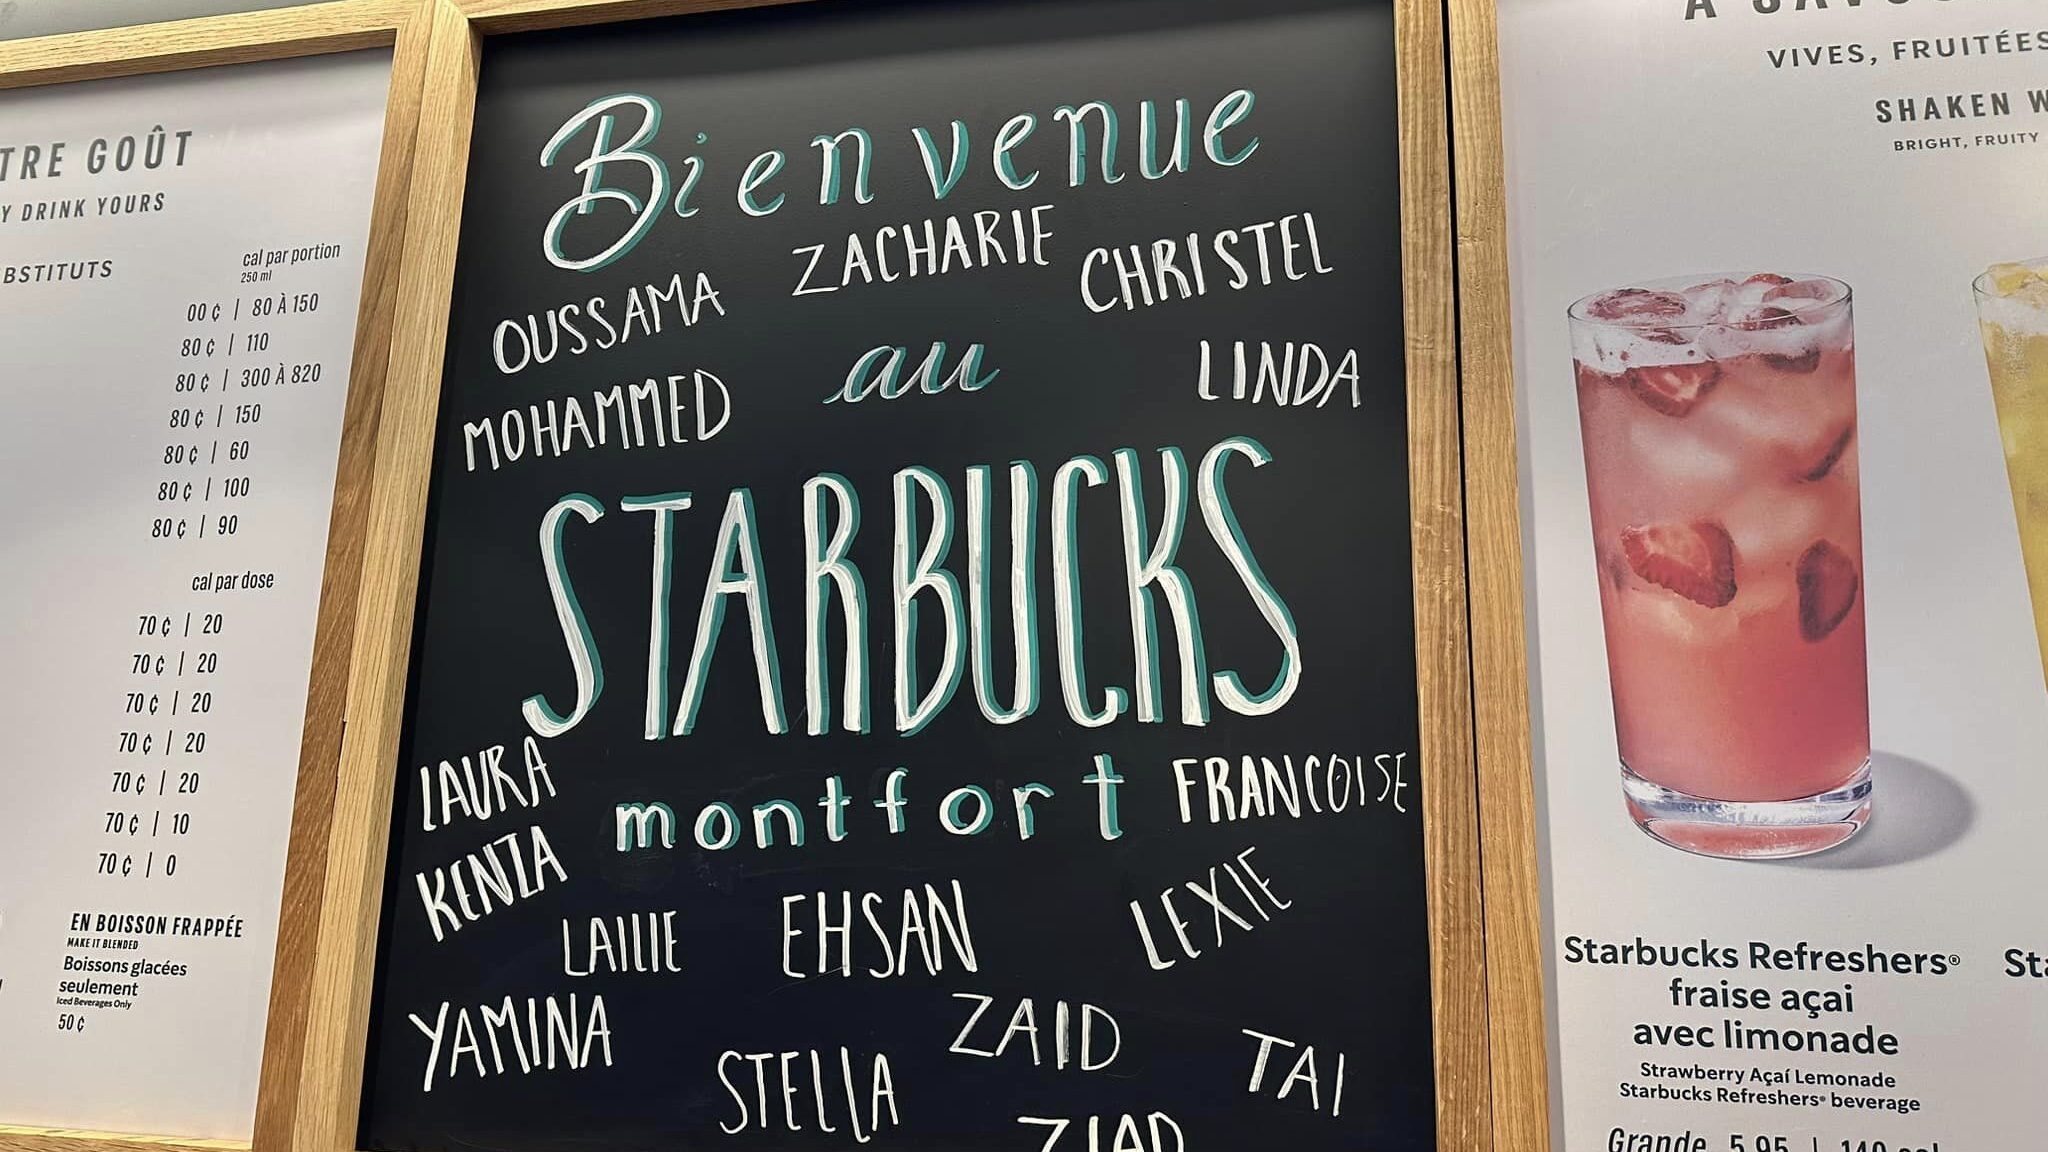 Tableau montrant les noms des membres de l'équipe du Starbucks